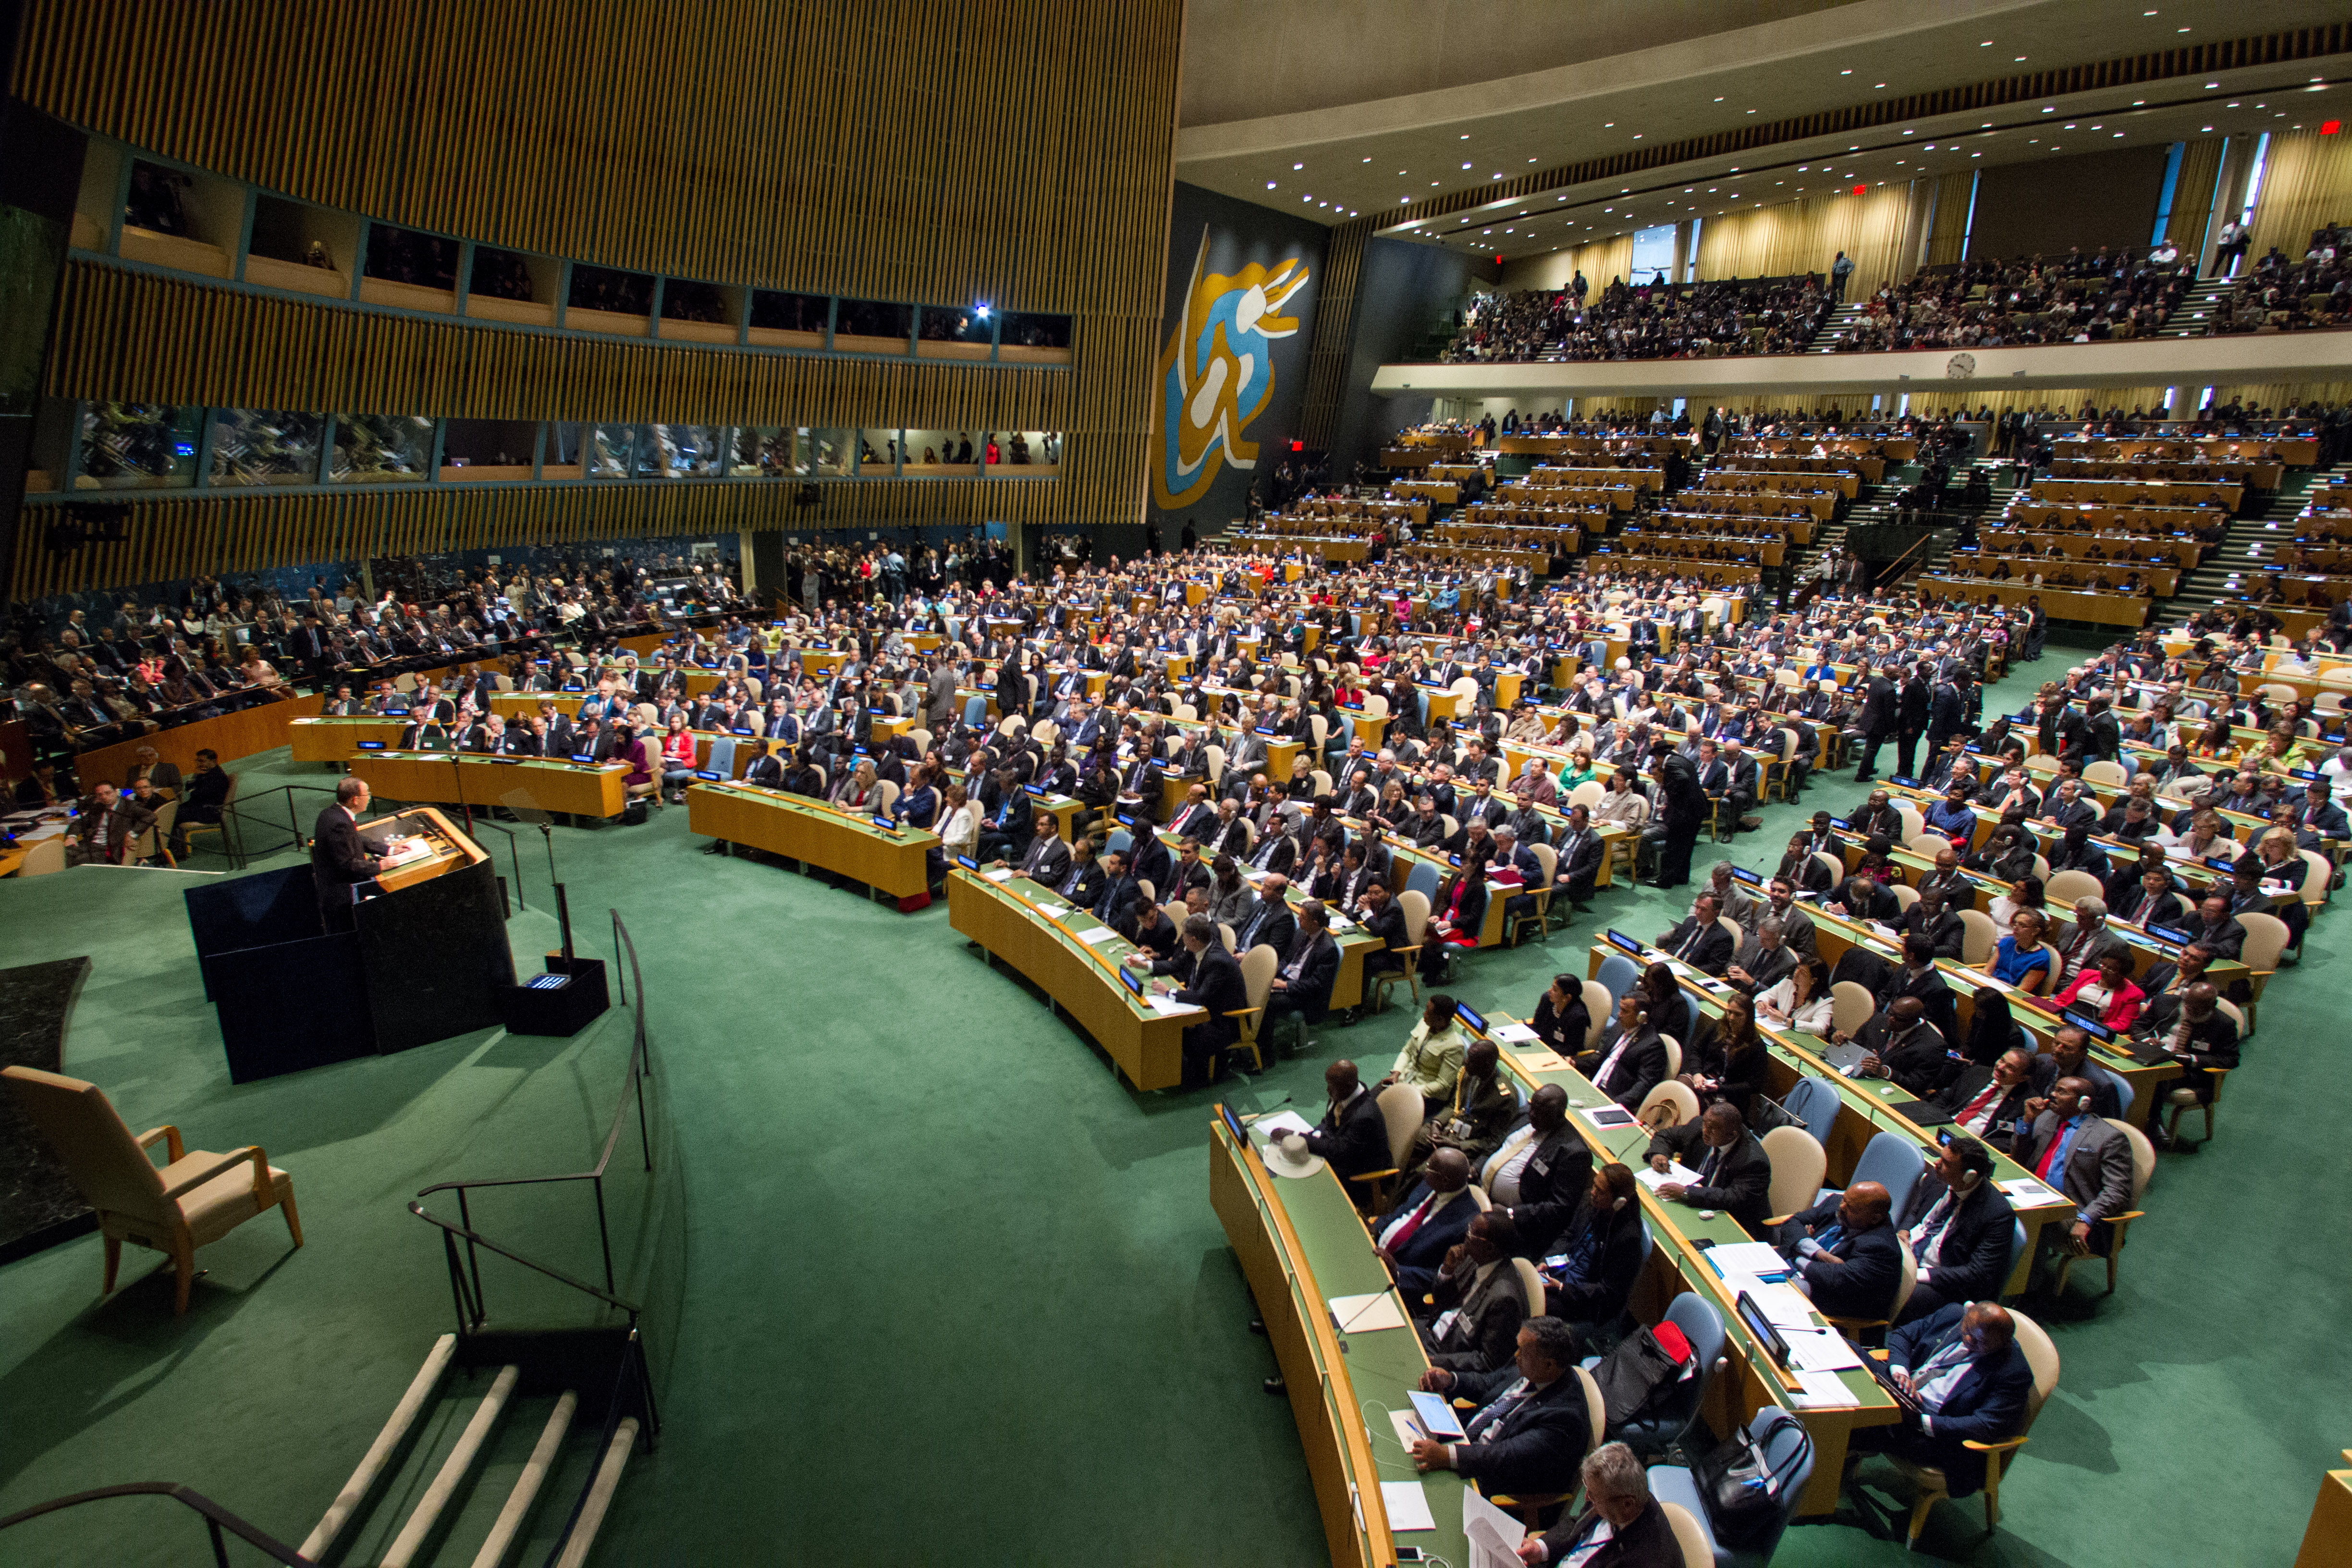 Укрепление оон. Третий комитет ООН. Генеральная Ассамблея ООН. ООН США. Зеленый зал в ООН.